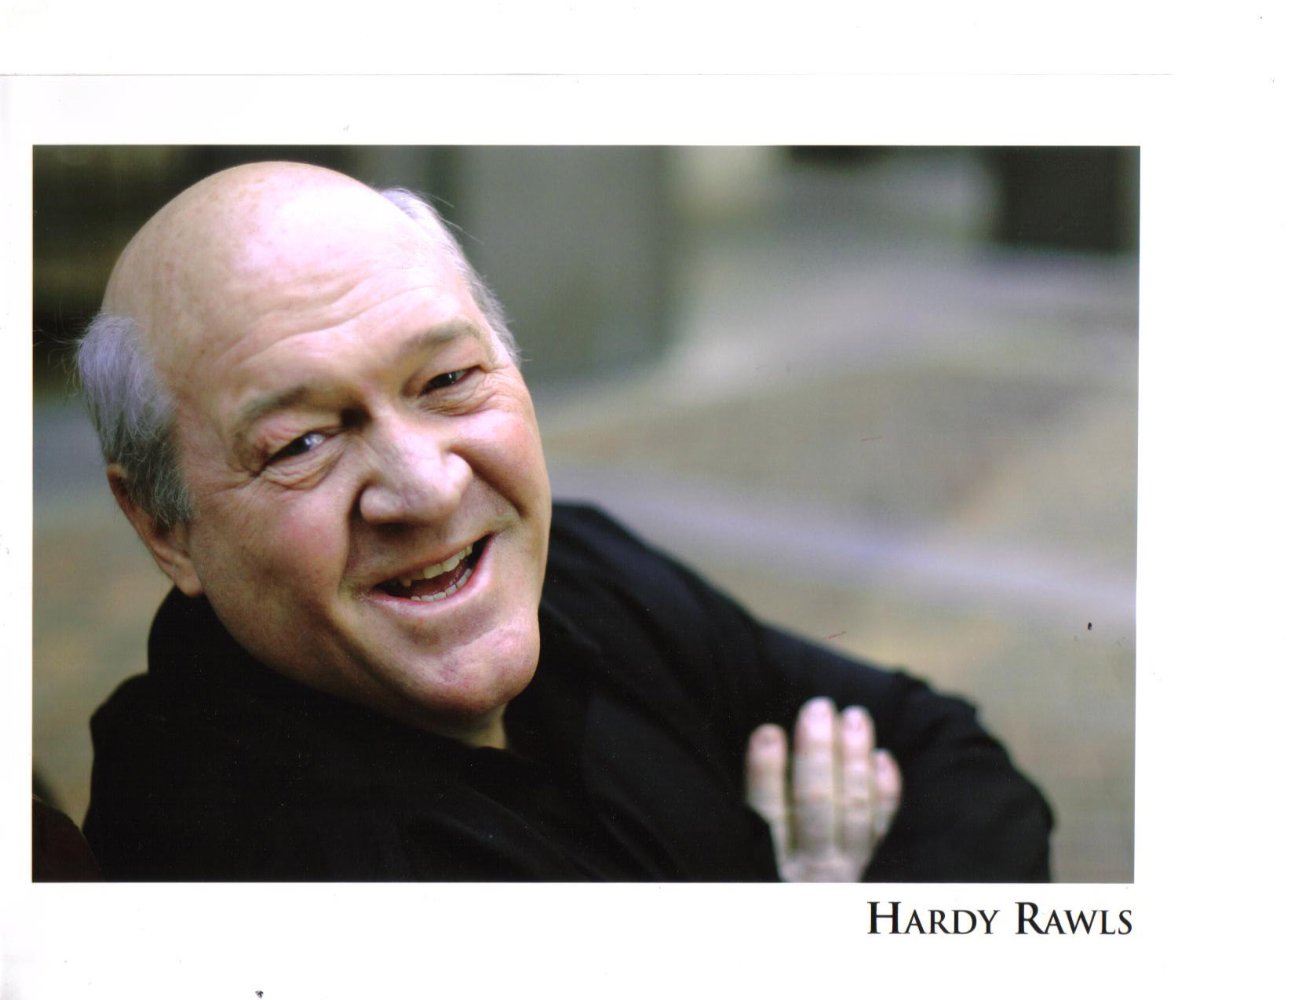 Hardy Rawls